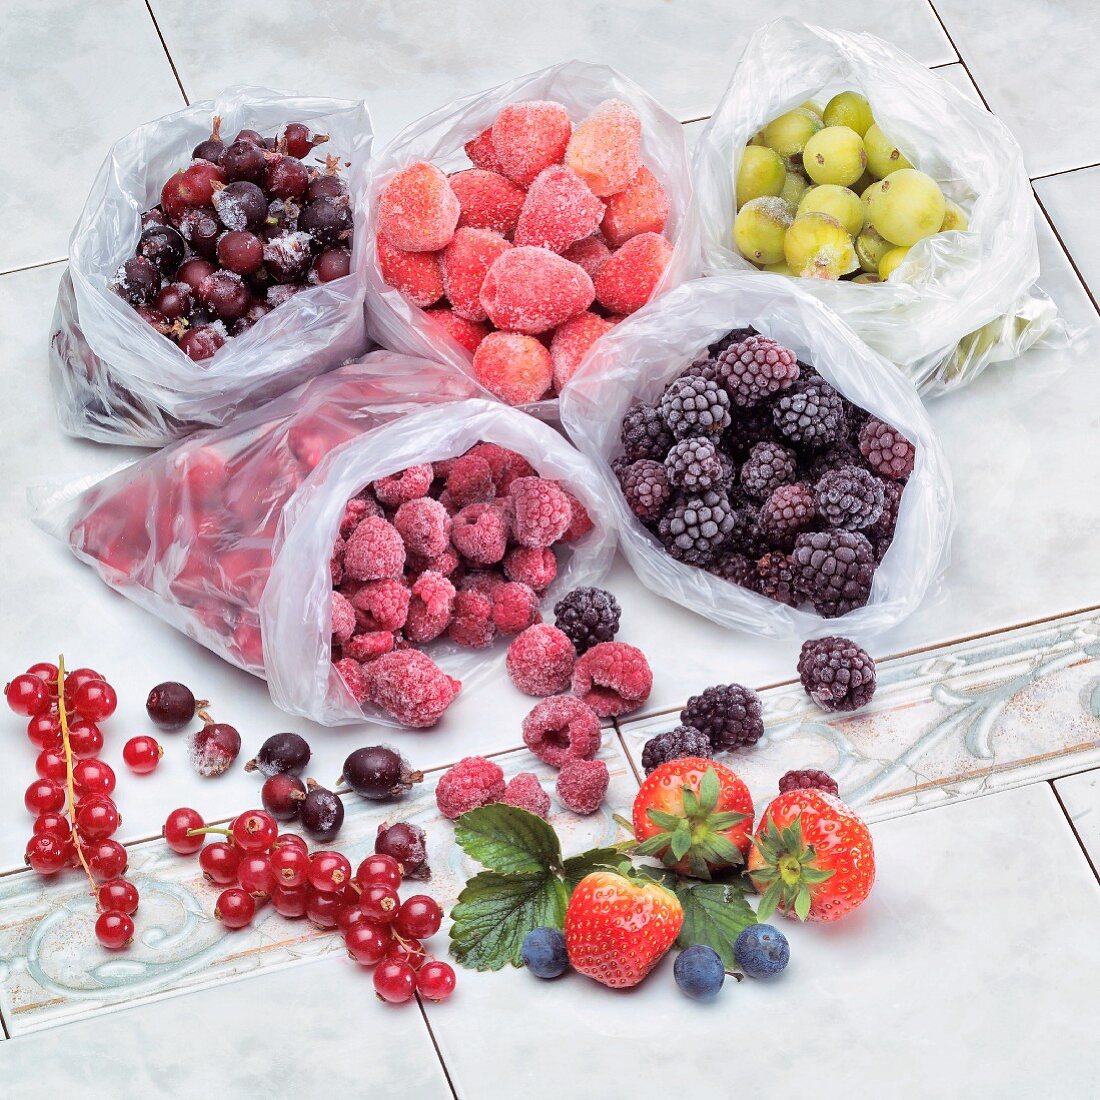 Frozen berries in plastic bags